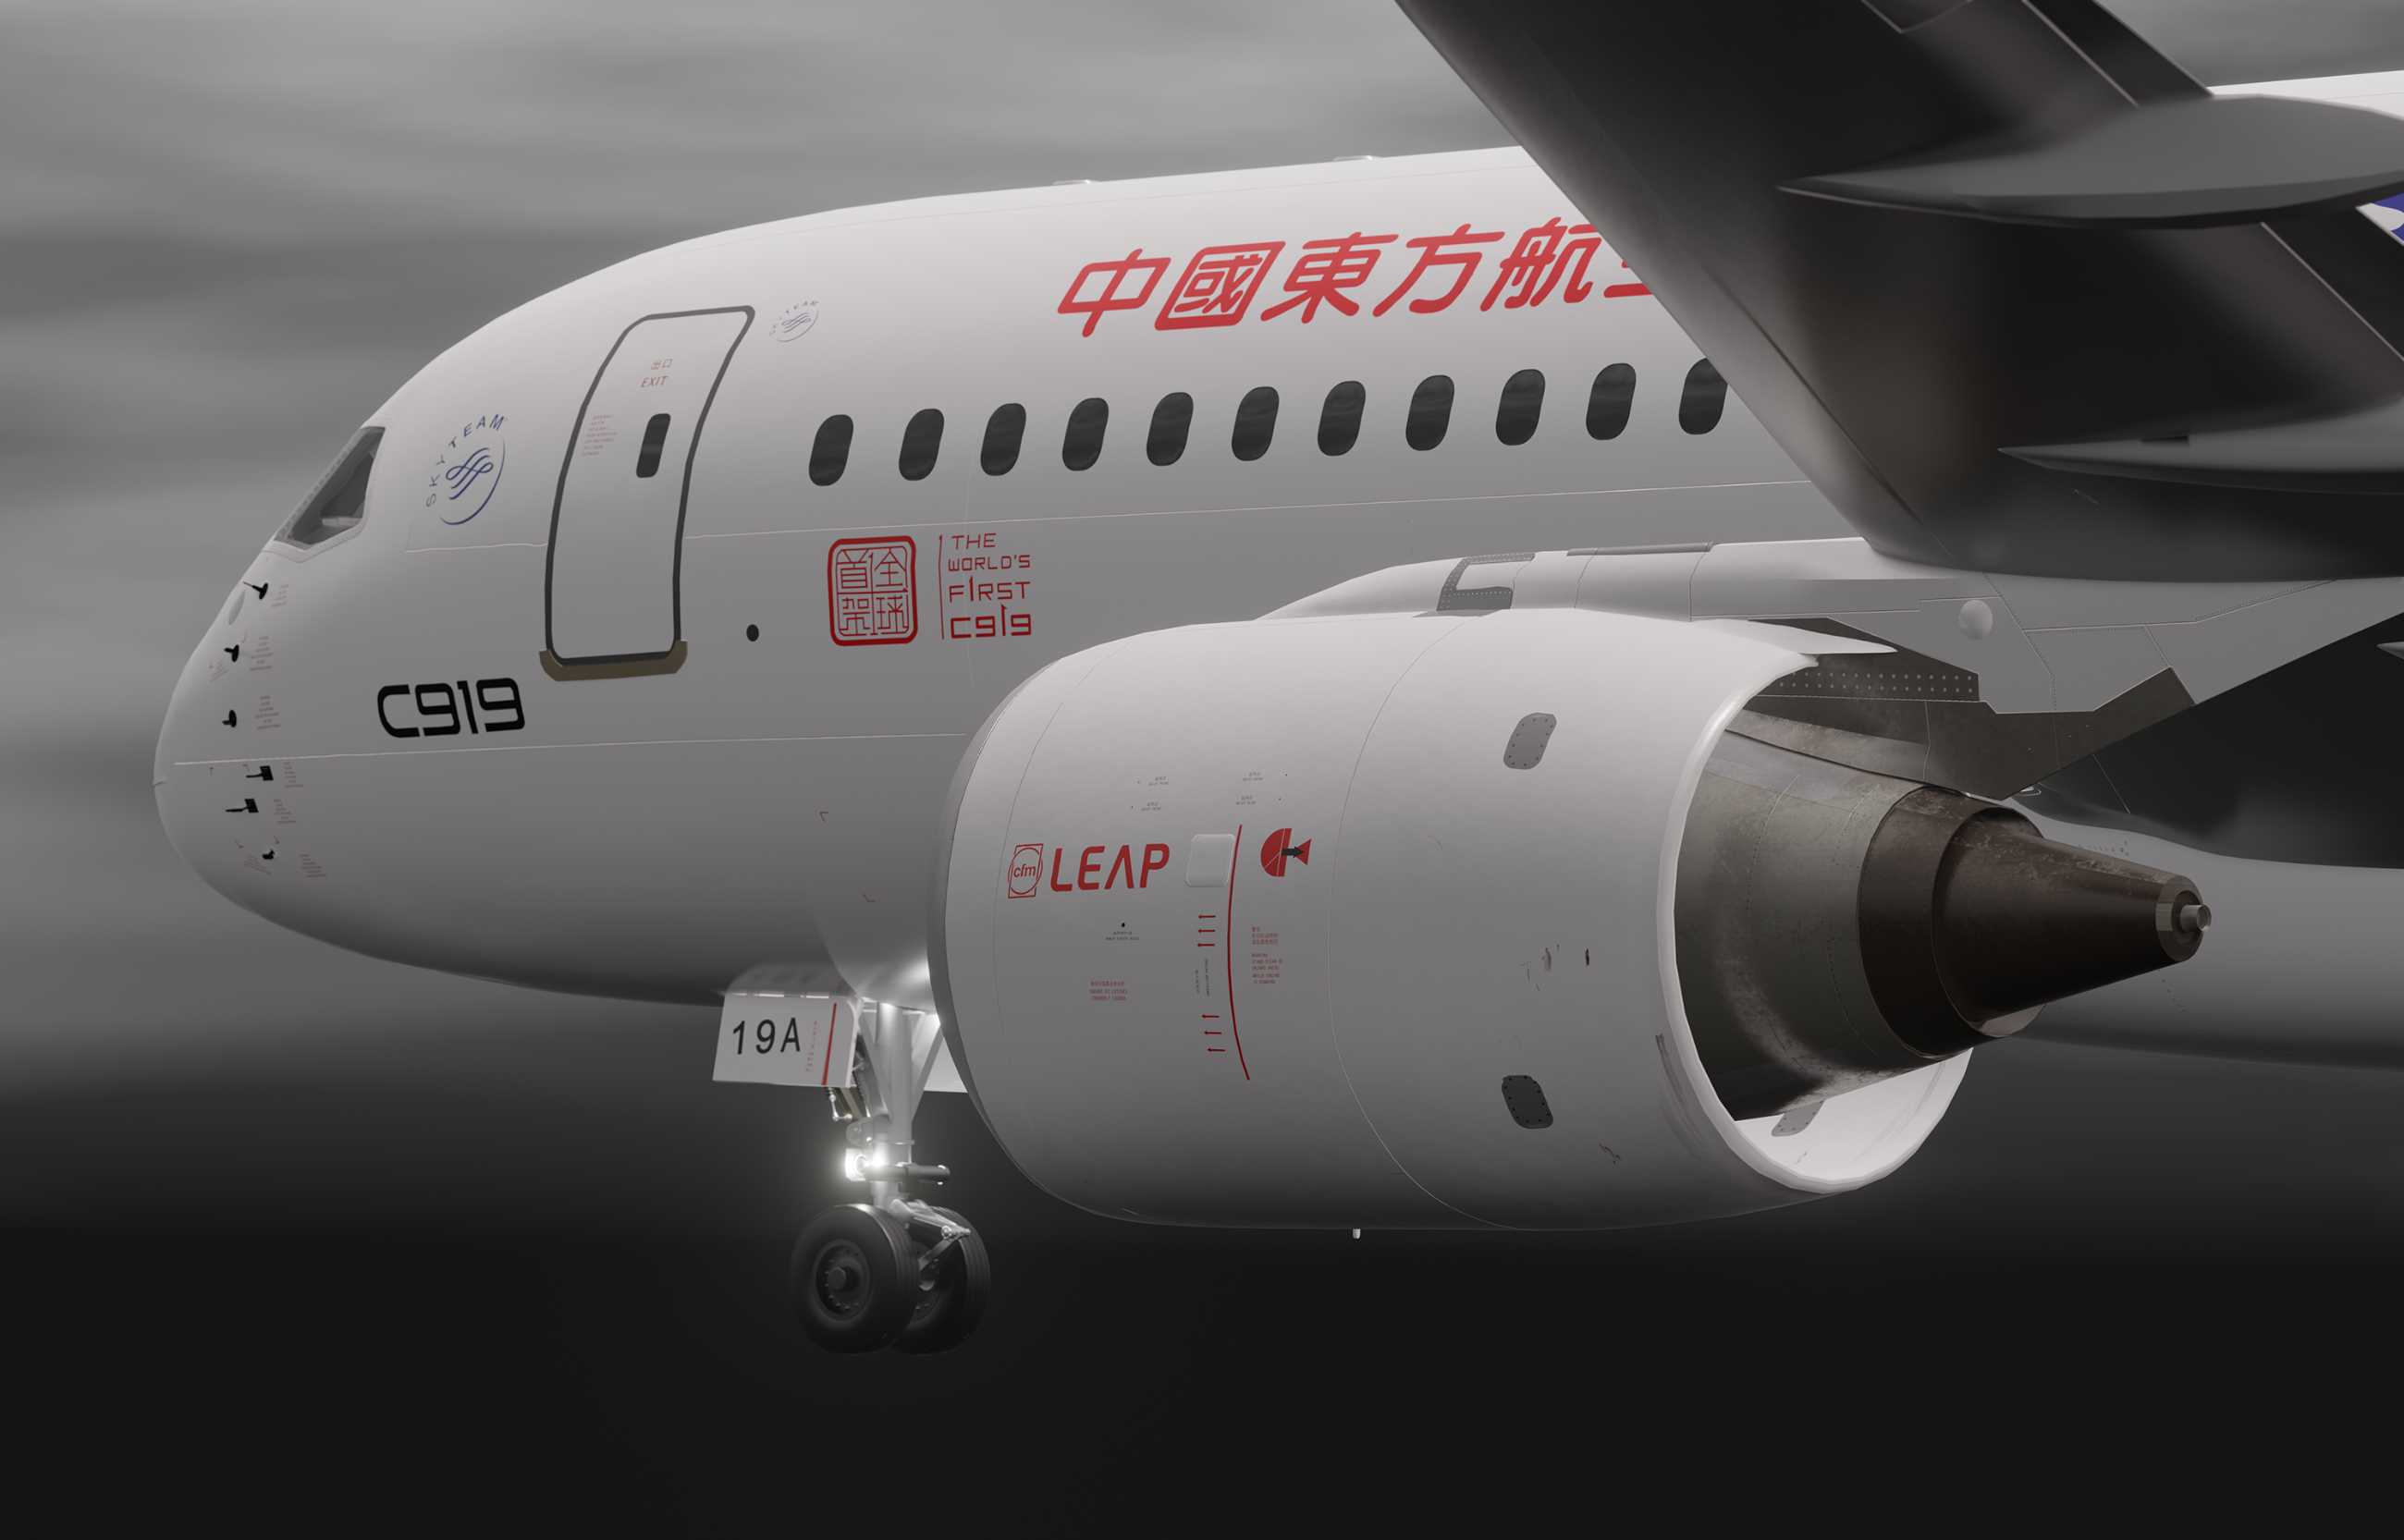 自研C919国产大飞机机模demo 微软模拟飞行演示2.0-1417 